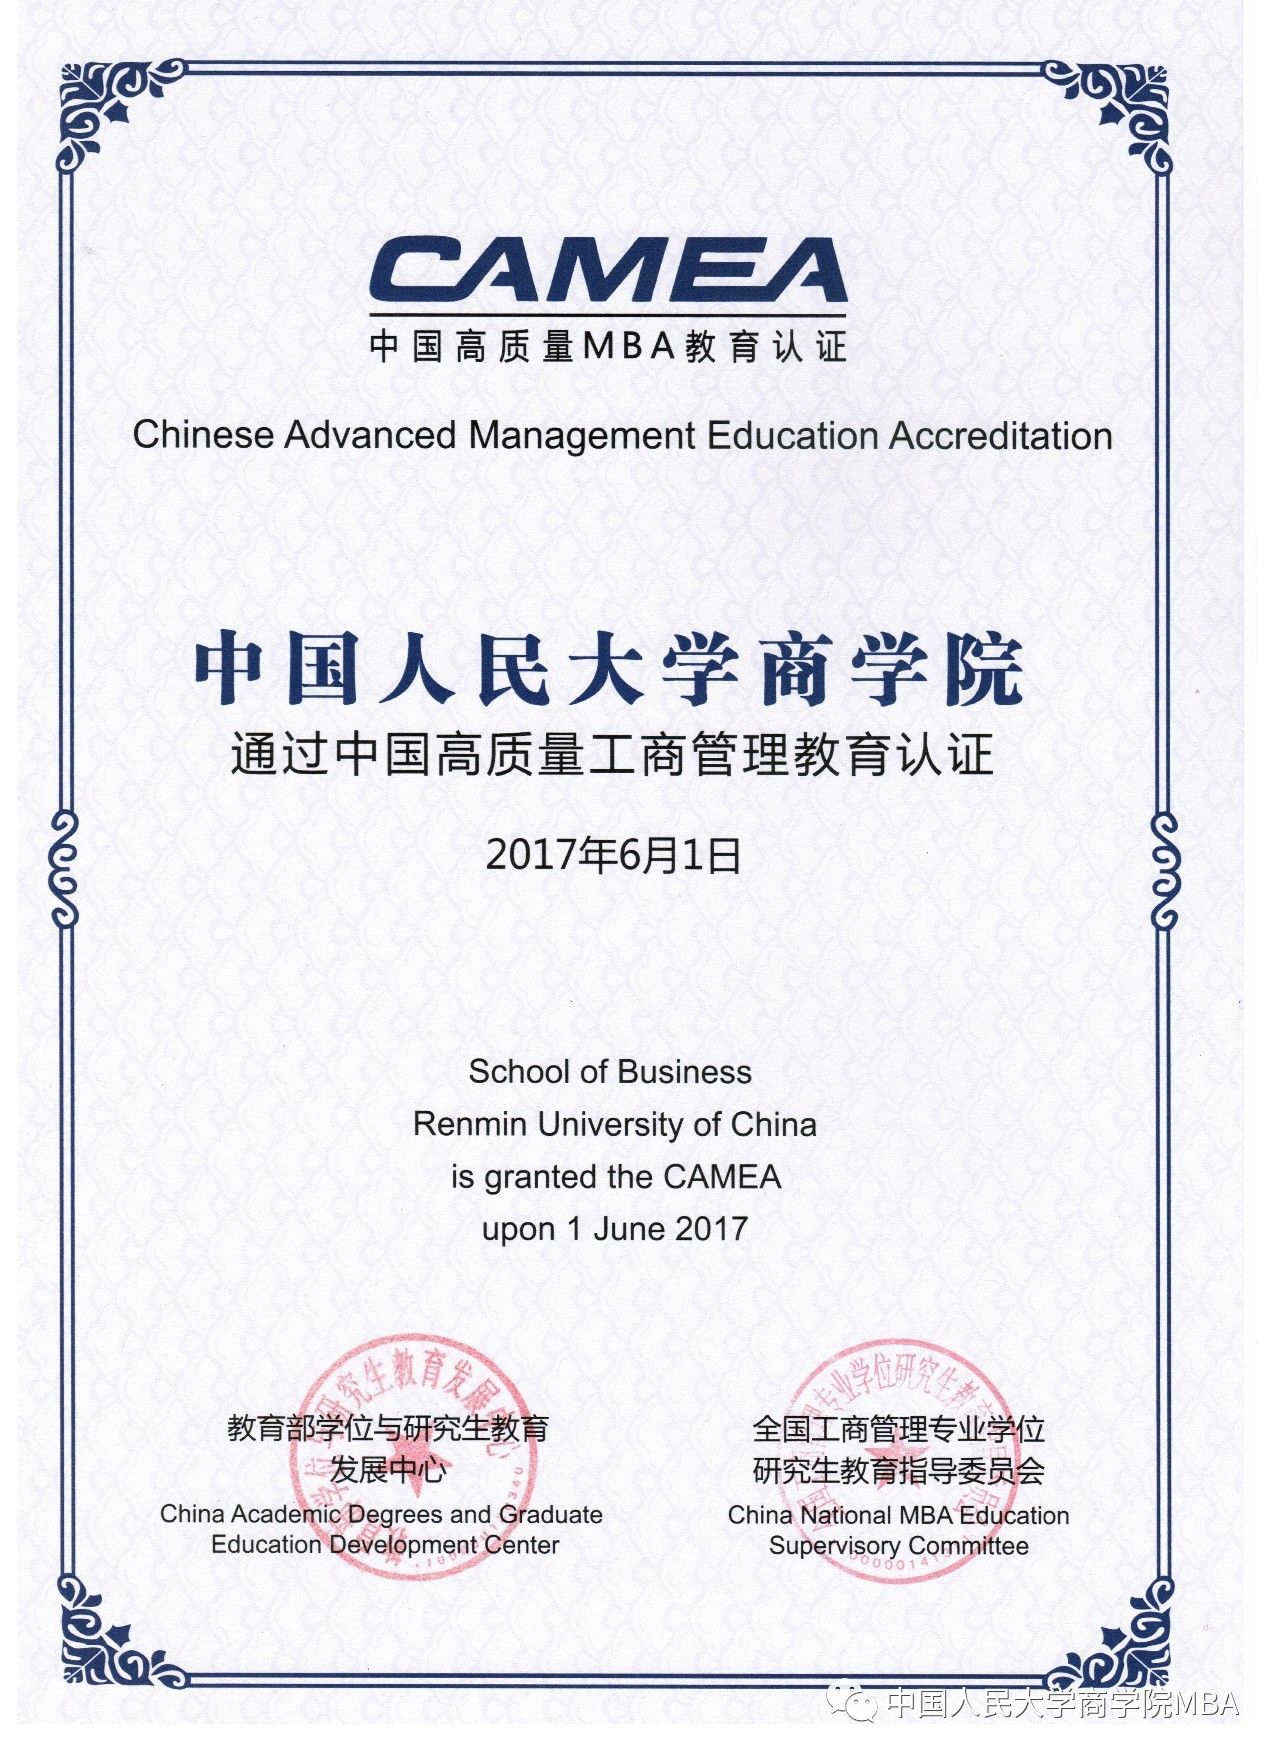 热烈祝贺人大商学院mba项目正式通过中国高质量mba教育认证